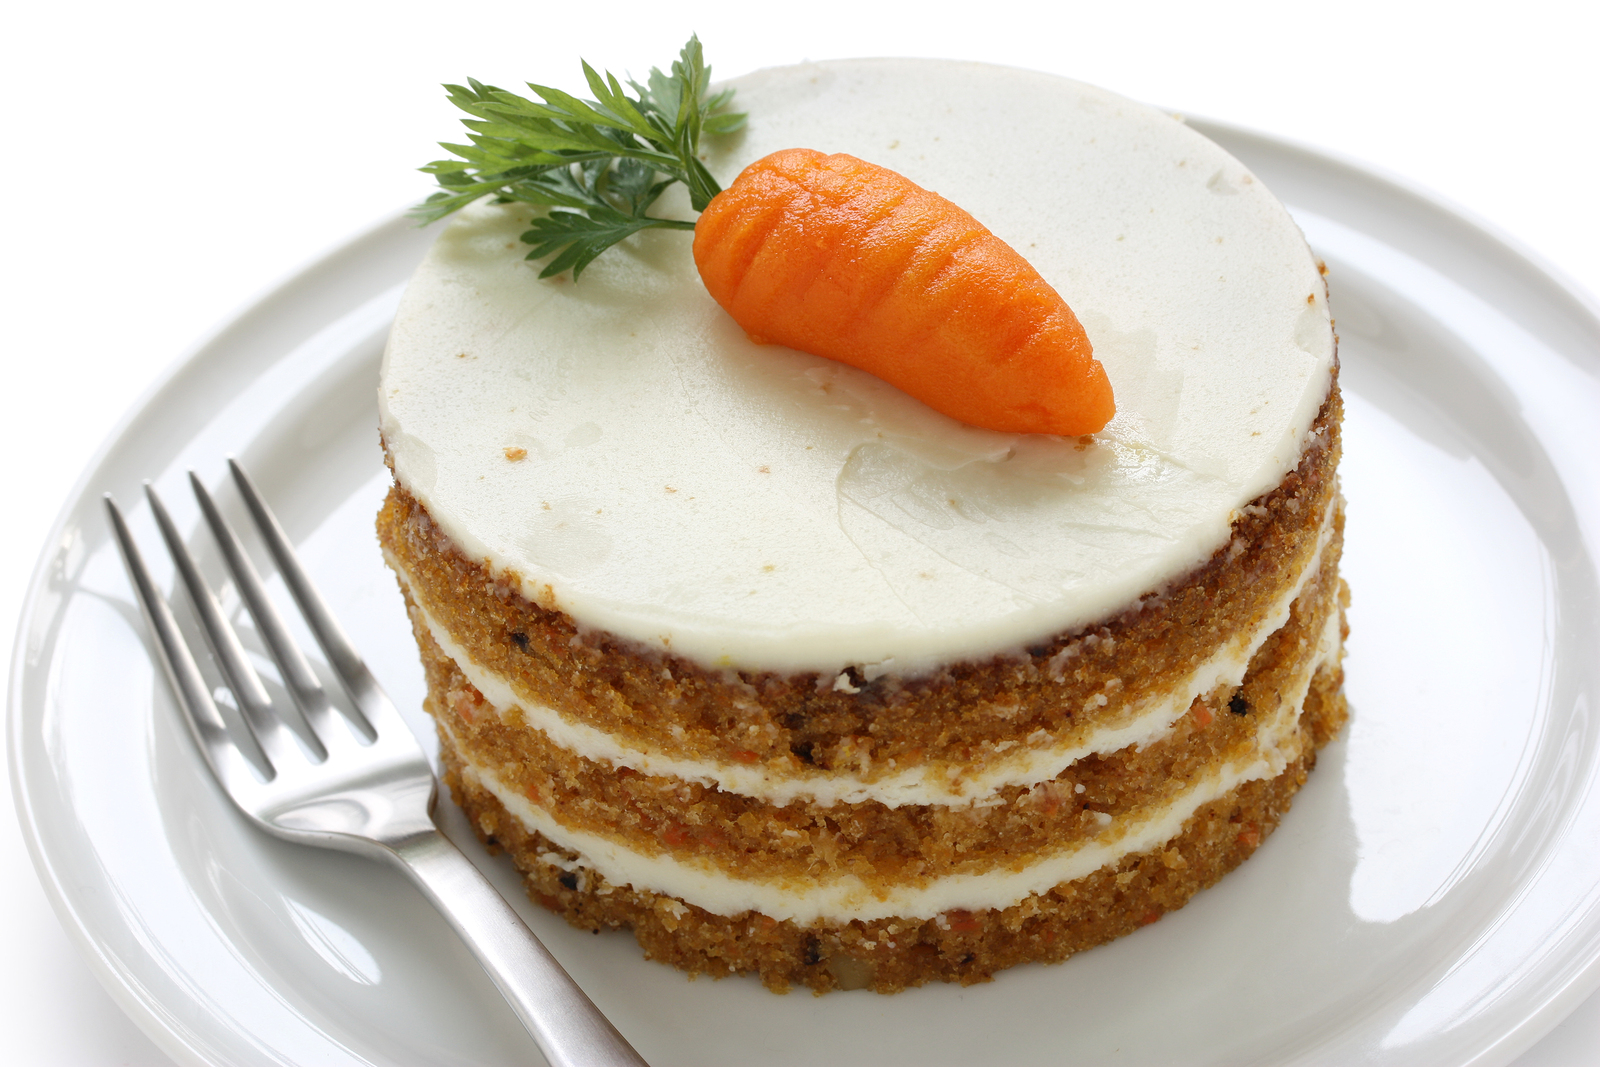 17. Carrot Cake. 